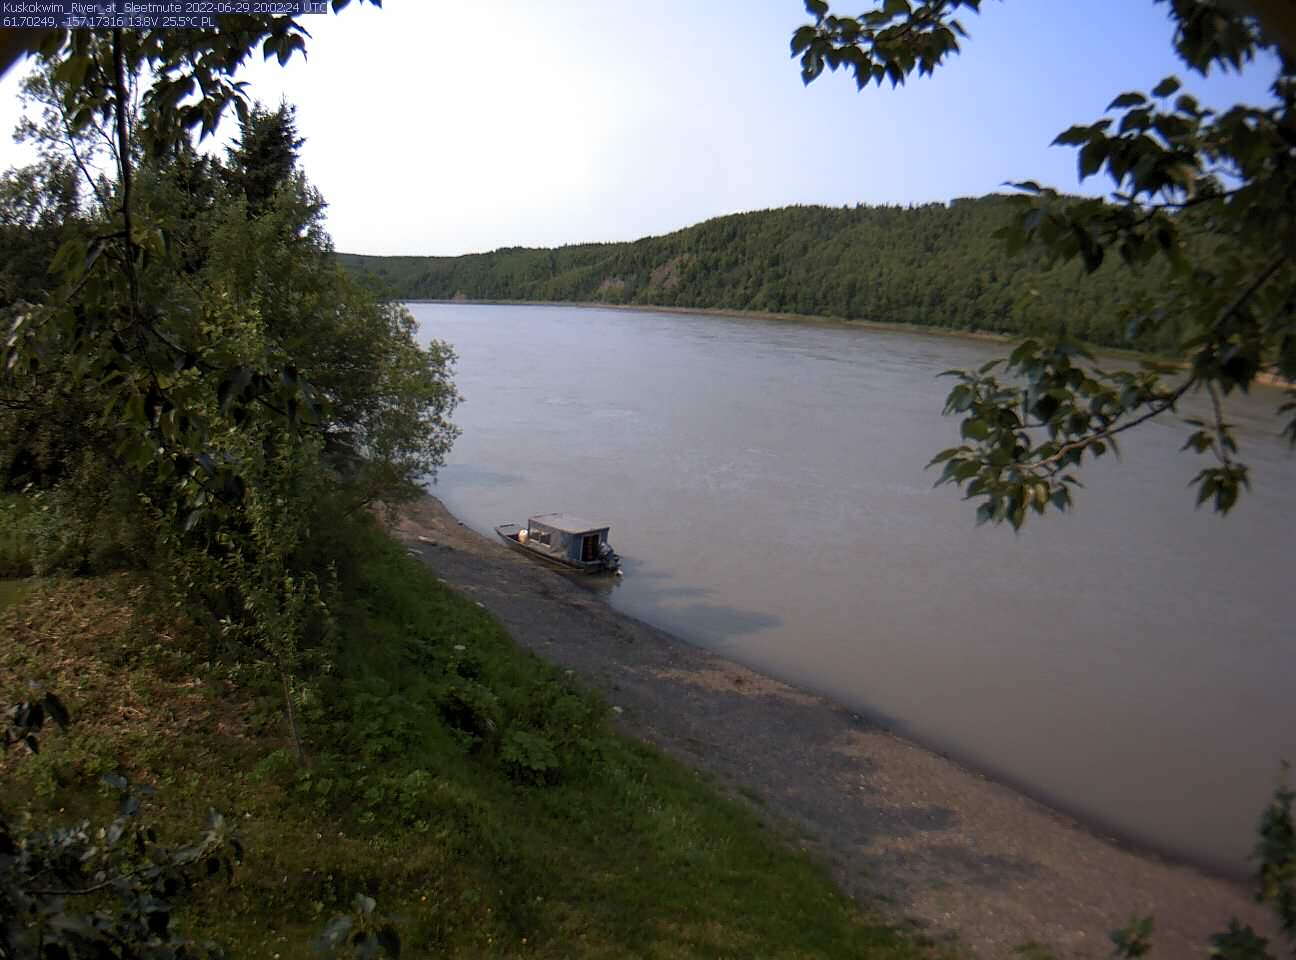 Kuskokwim_River_at_Sleetmute_20220629200225.jpg